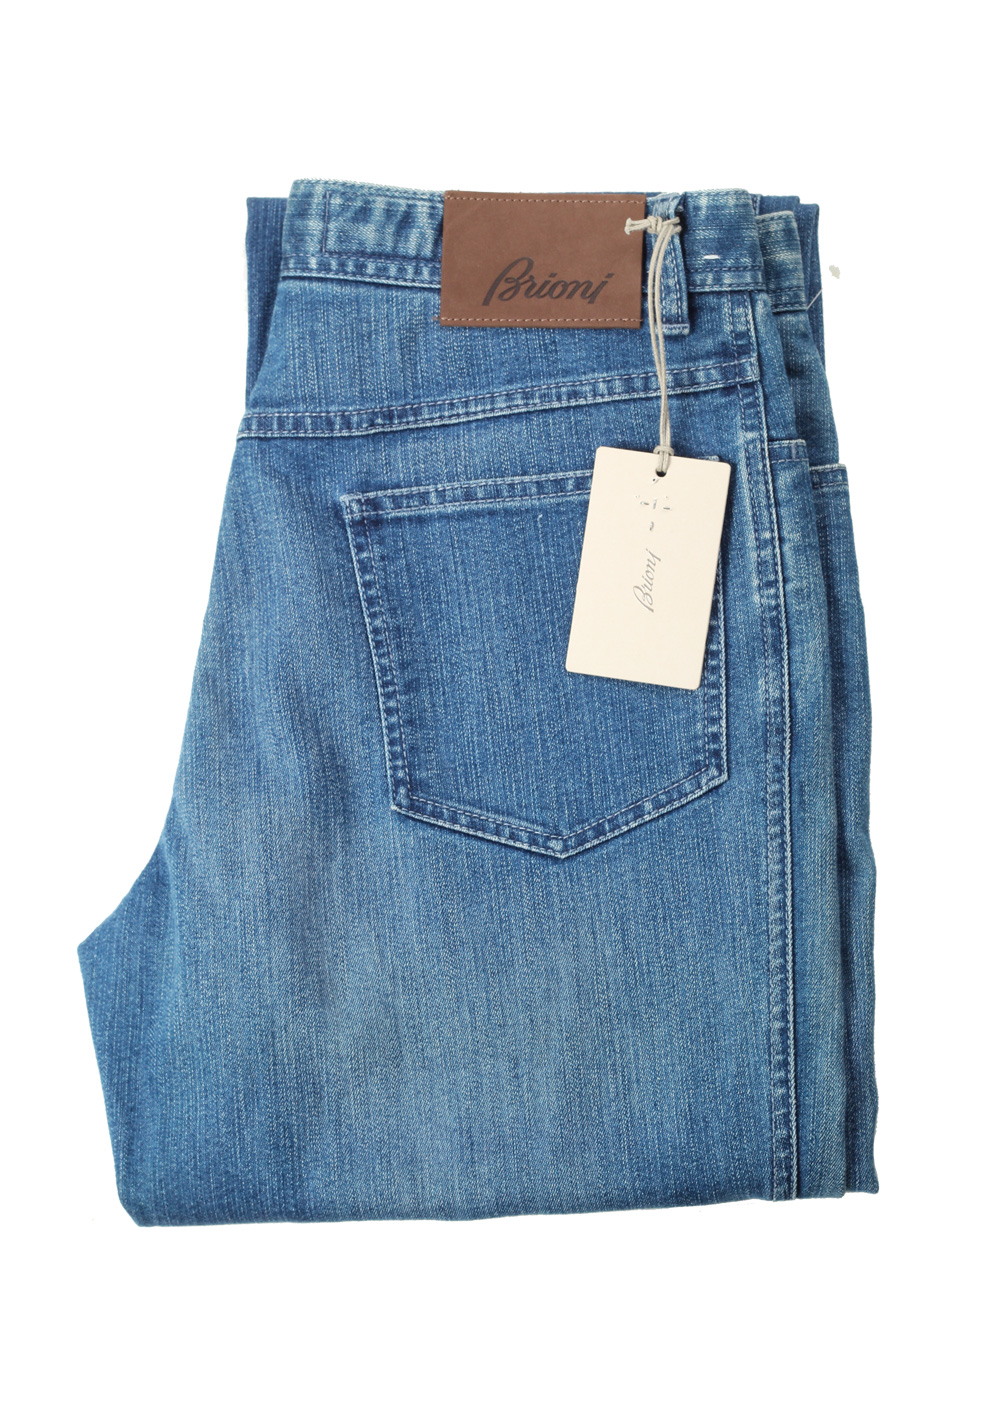 Brioni Blue Jeans Stelvio Trousers Size 48 / 32 U.S. | Costume Limité